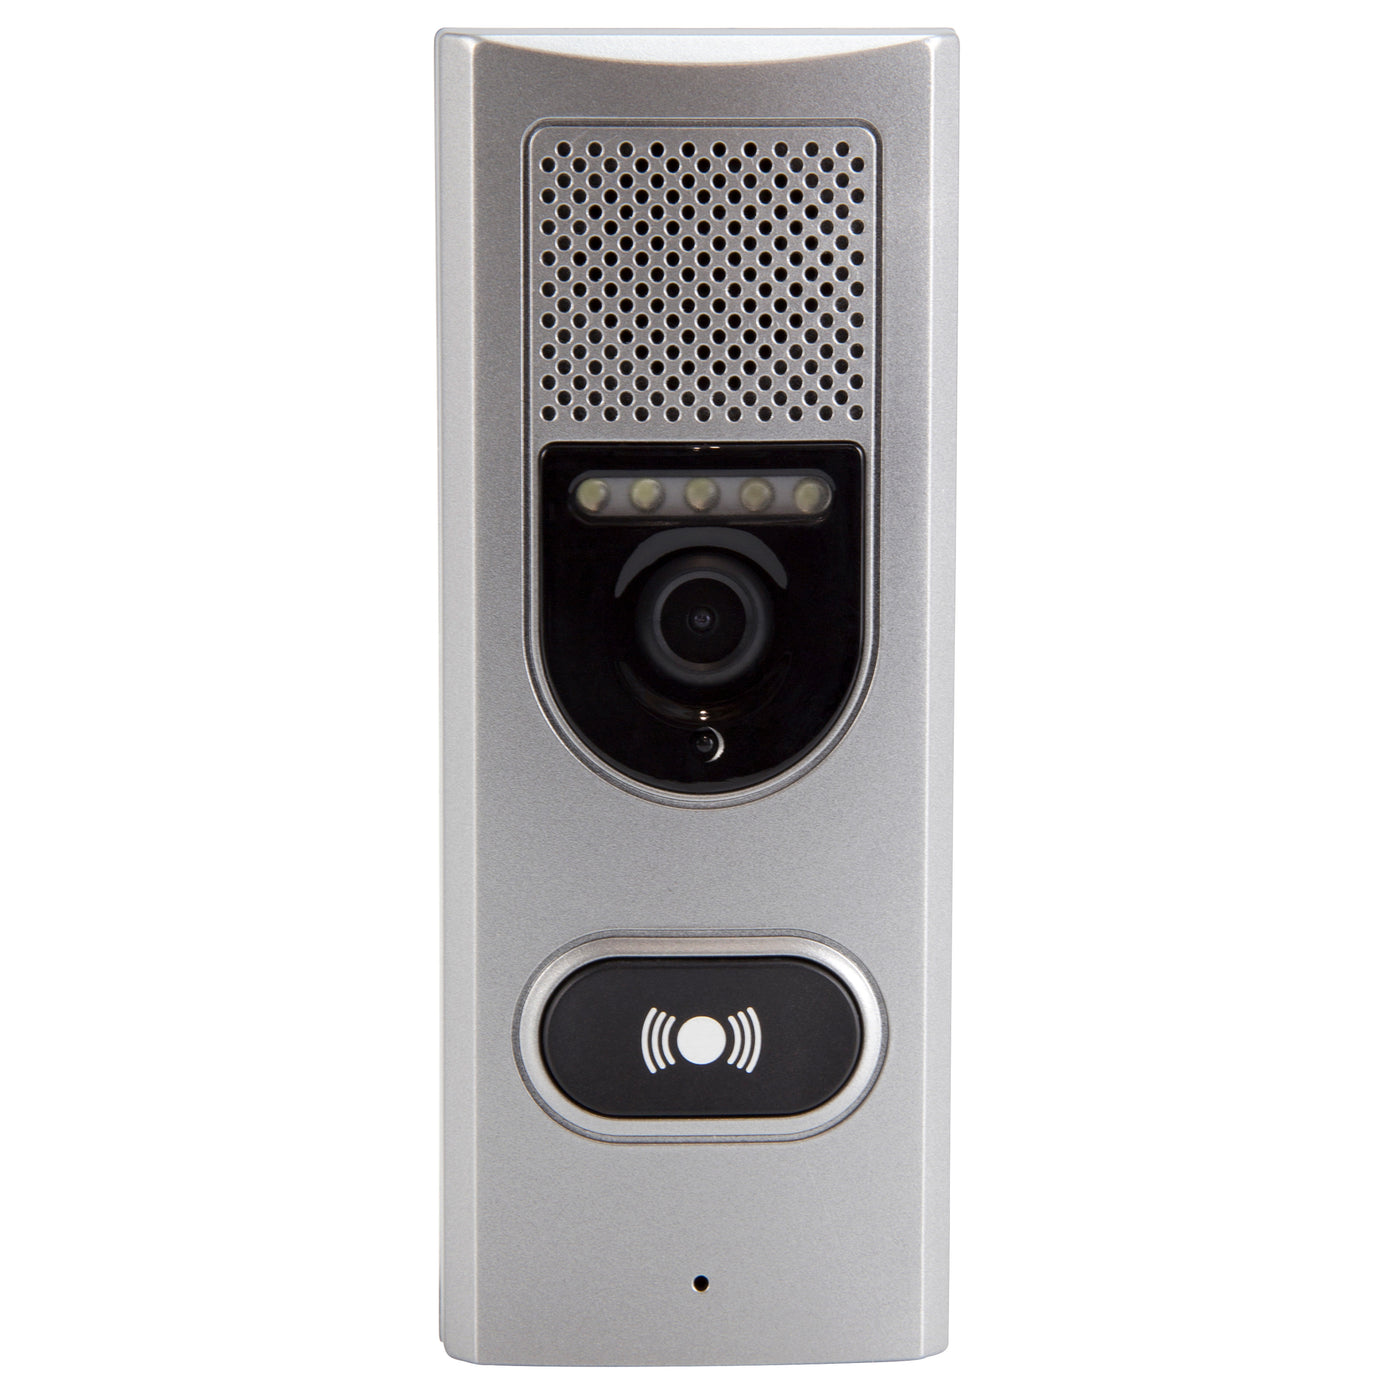 Alecto ADI-250 - Türsprechanlage mit Kamera und 3.5" Farbdisplay, Weiß/Silber